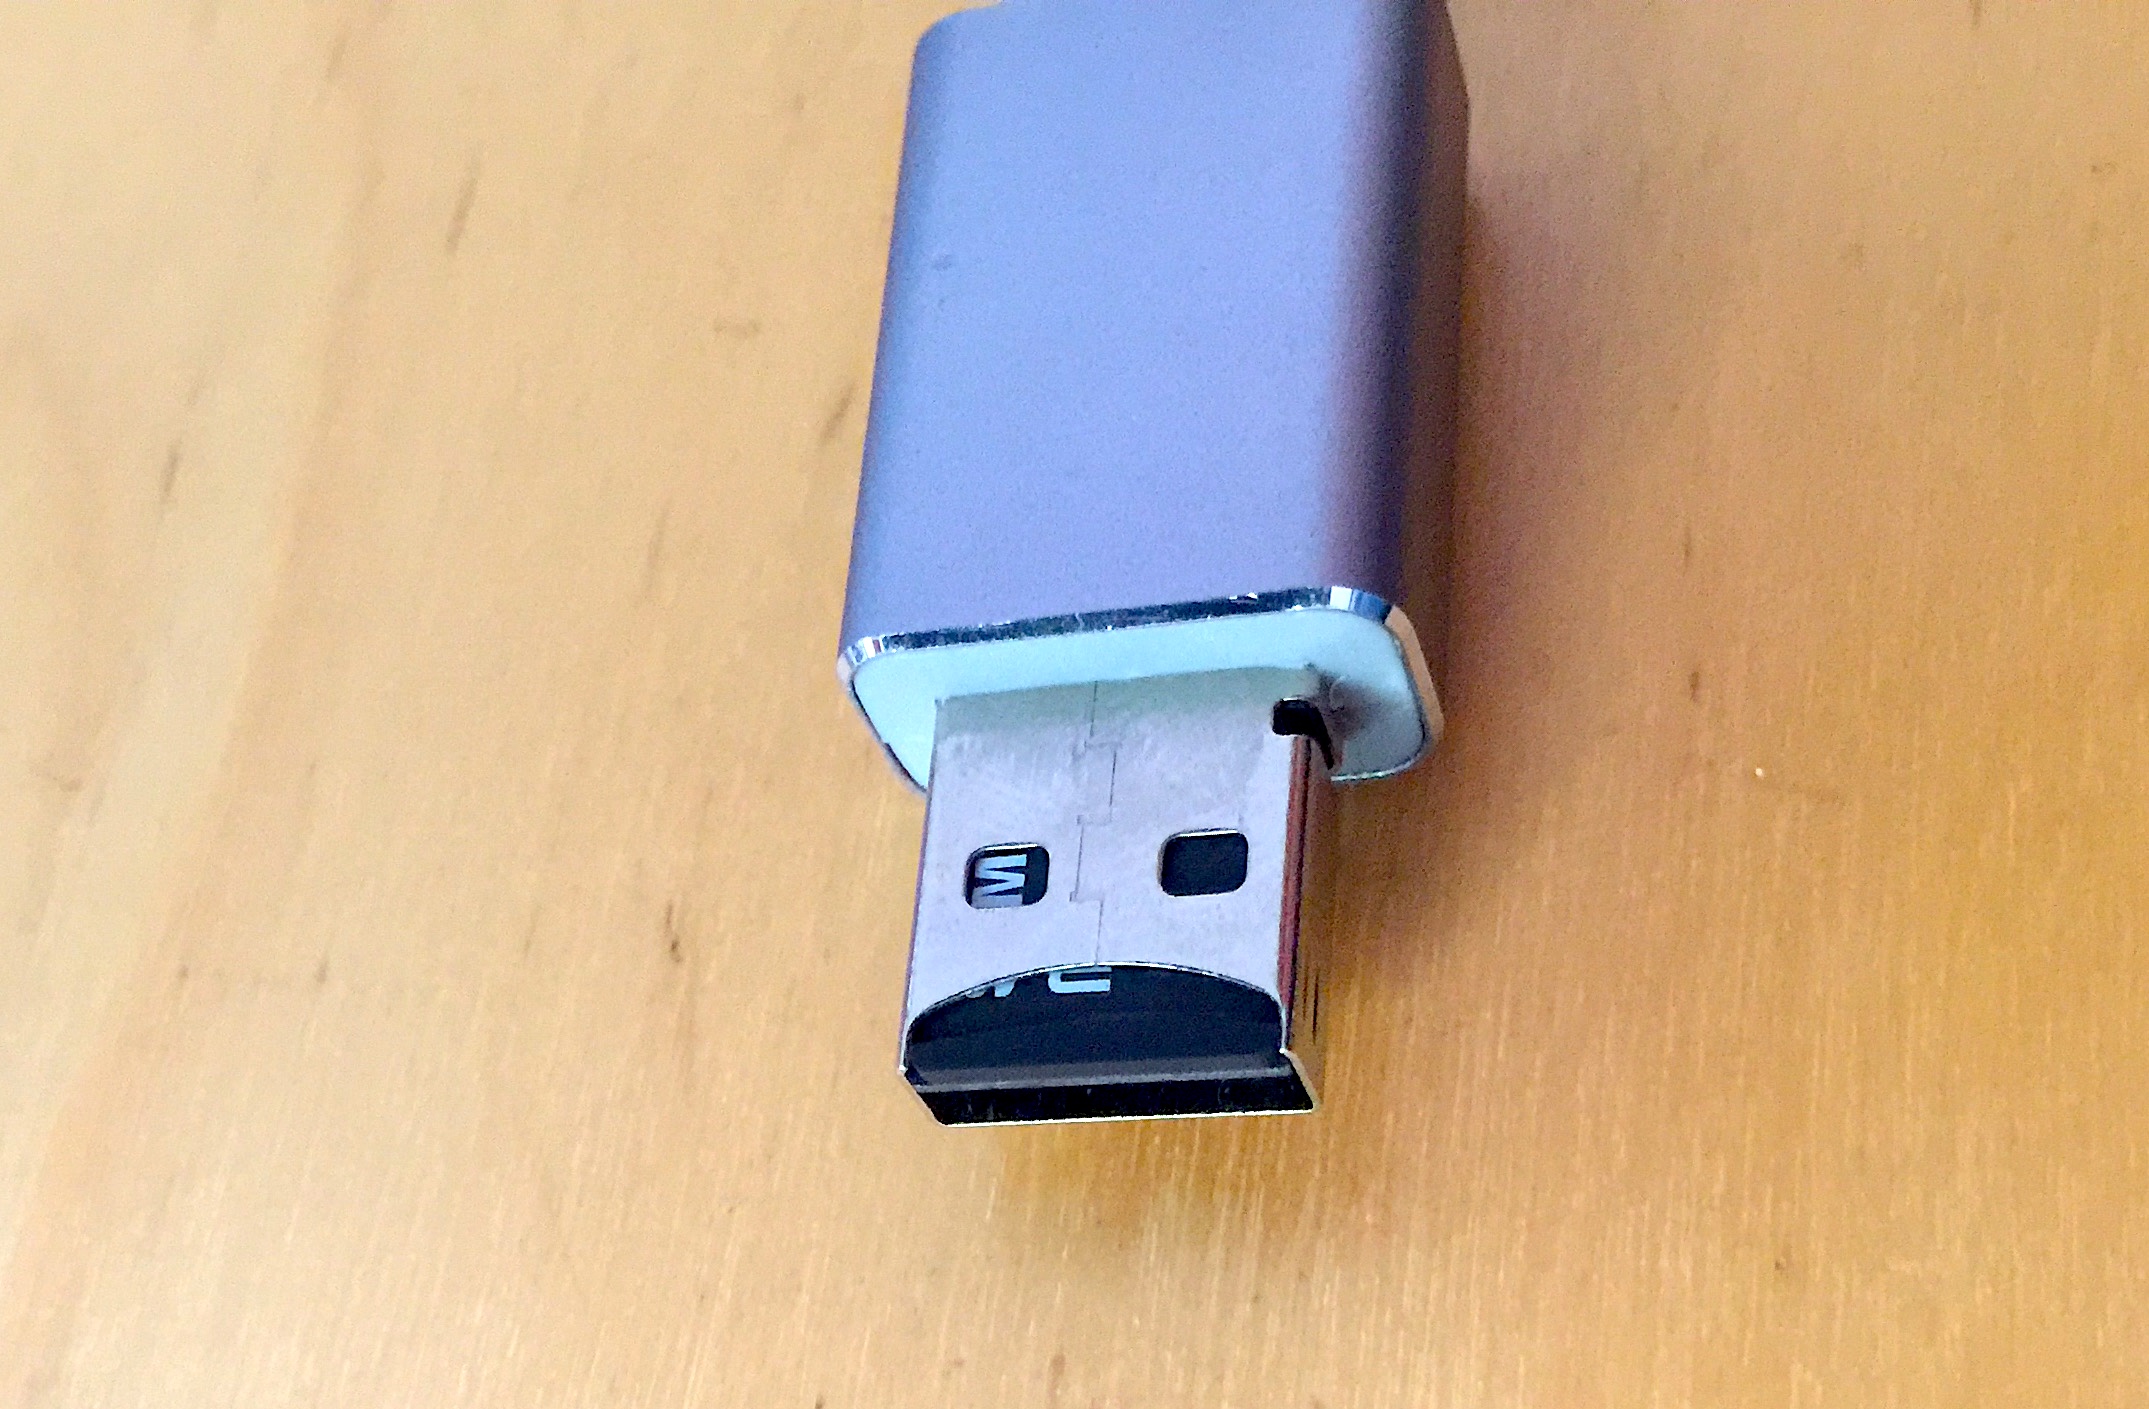 Clé USB Y Disk 128 Go pour iPhone iPad Mémoire USB OTG Clé USB 4 en 1  Compatible avec Android IOS USB Micro USB Type C Lightning couleur maison